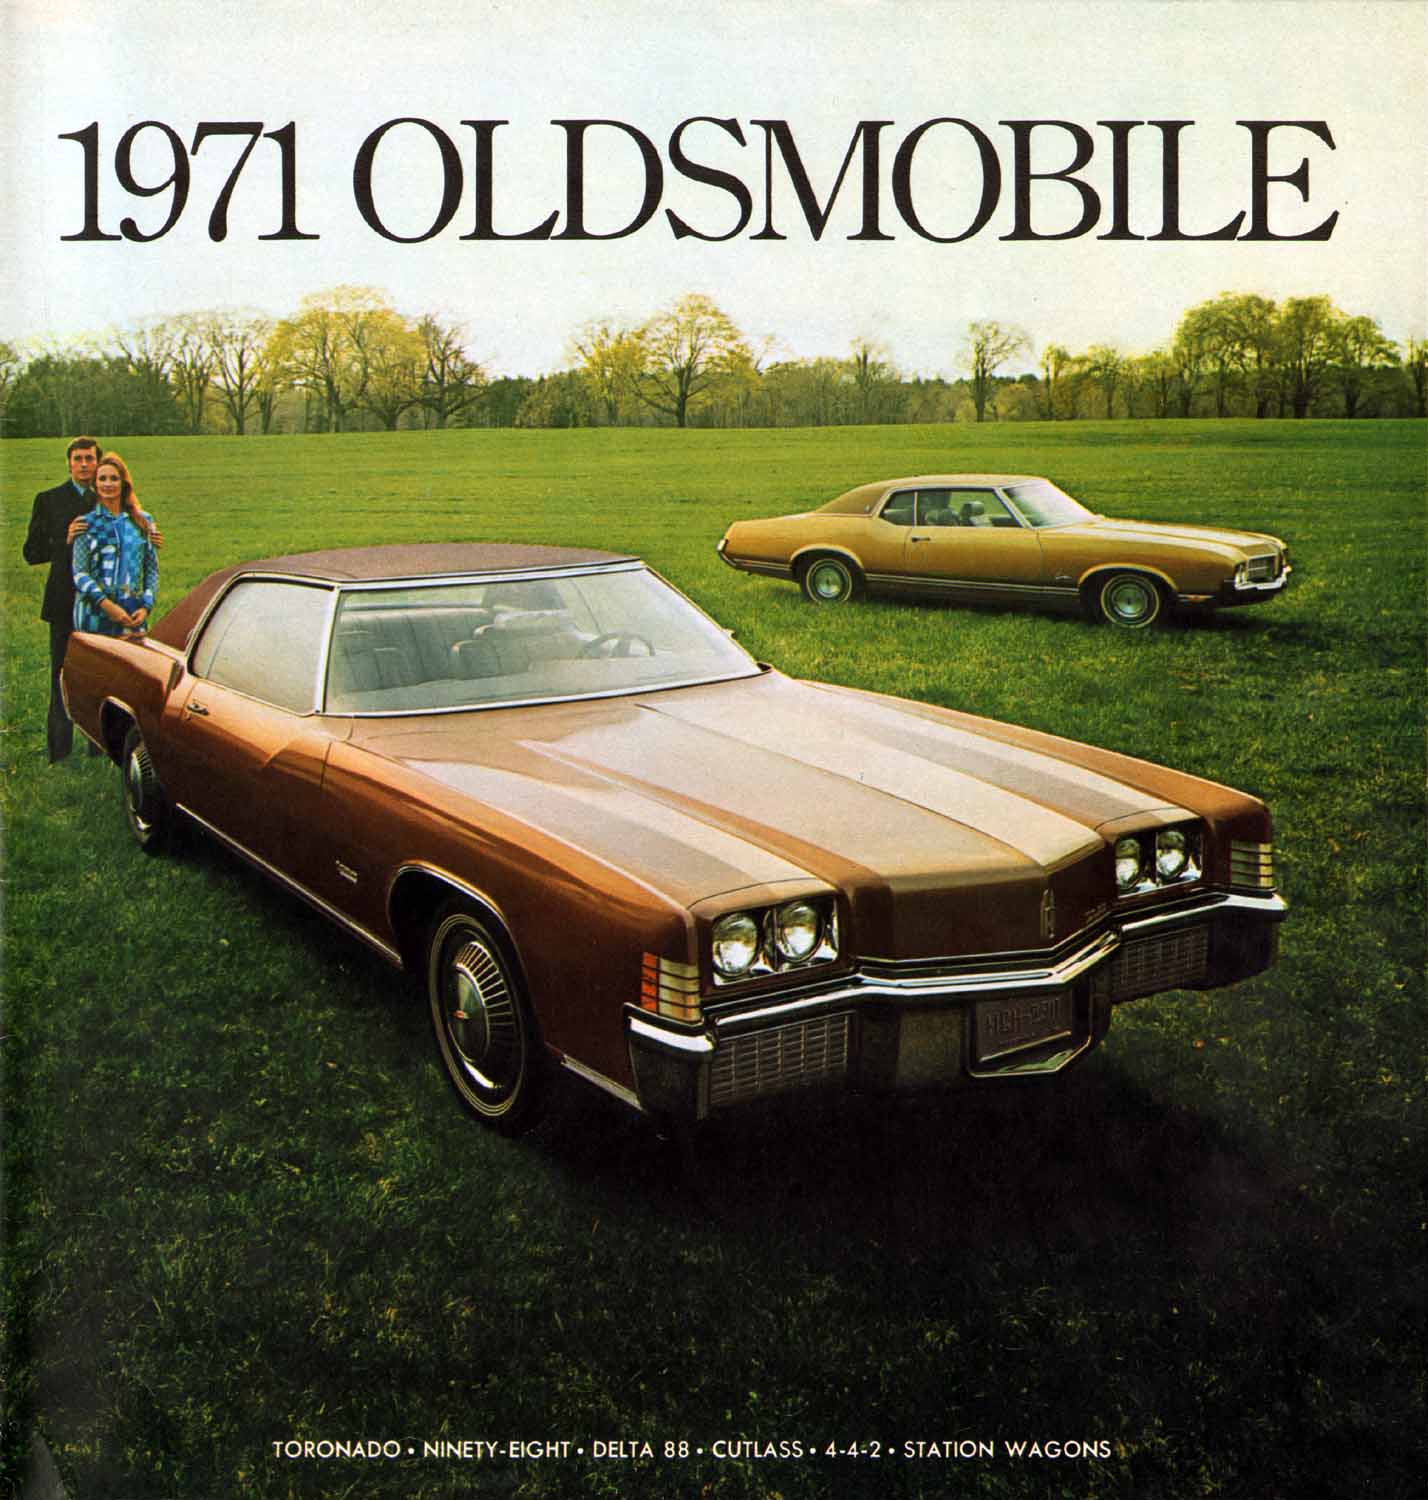 1971_Oldsmobile_Prestige-01